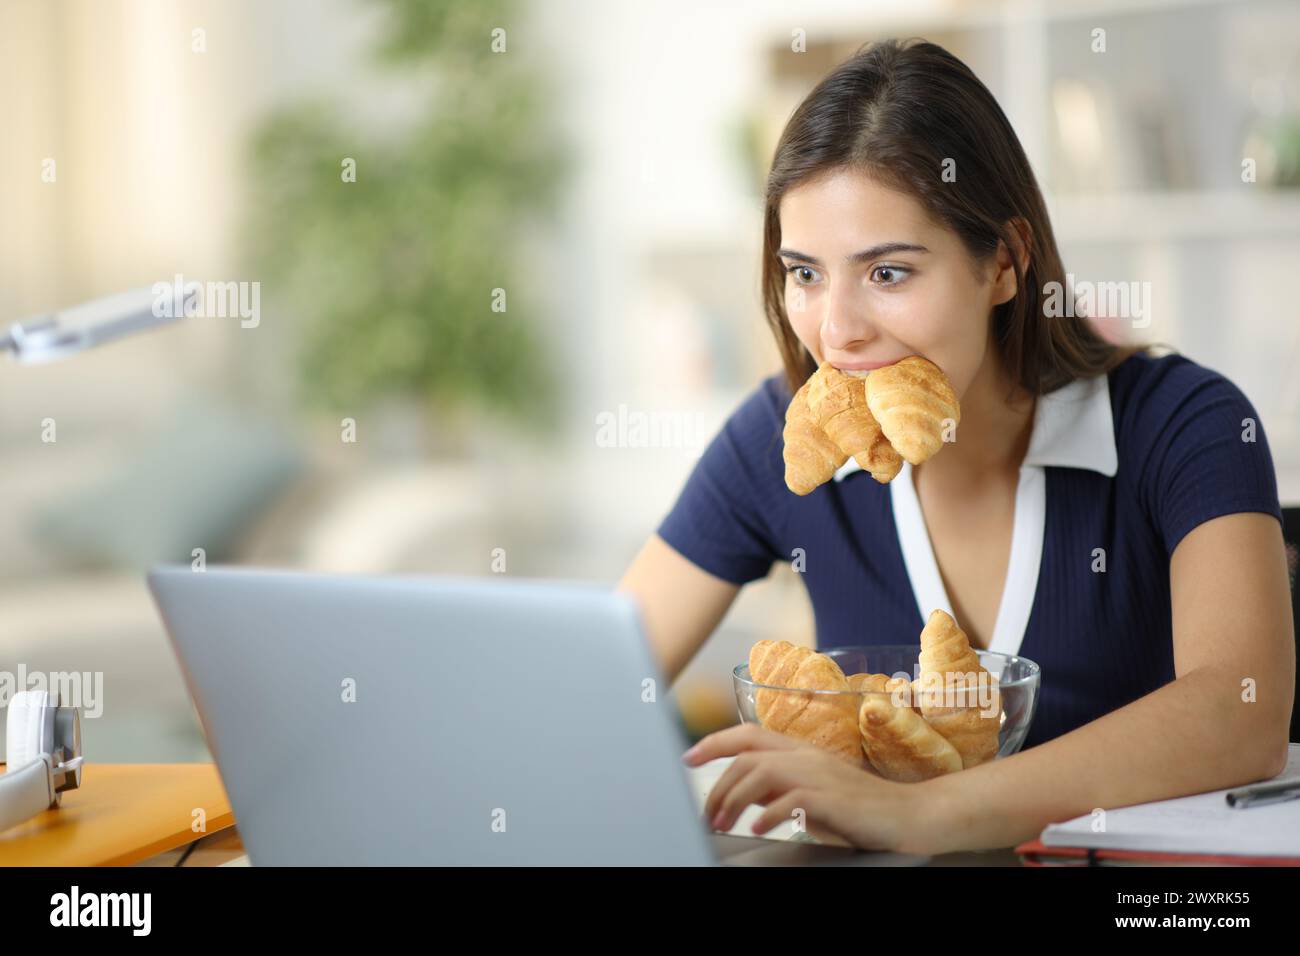 Étudiant gourmand e e-learning avec ordinateur portable mangeant beaucoup de croissants à la maison Banque D'Images